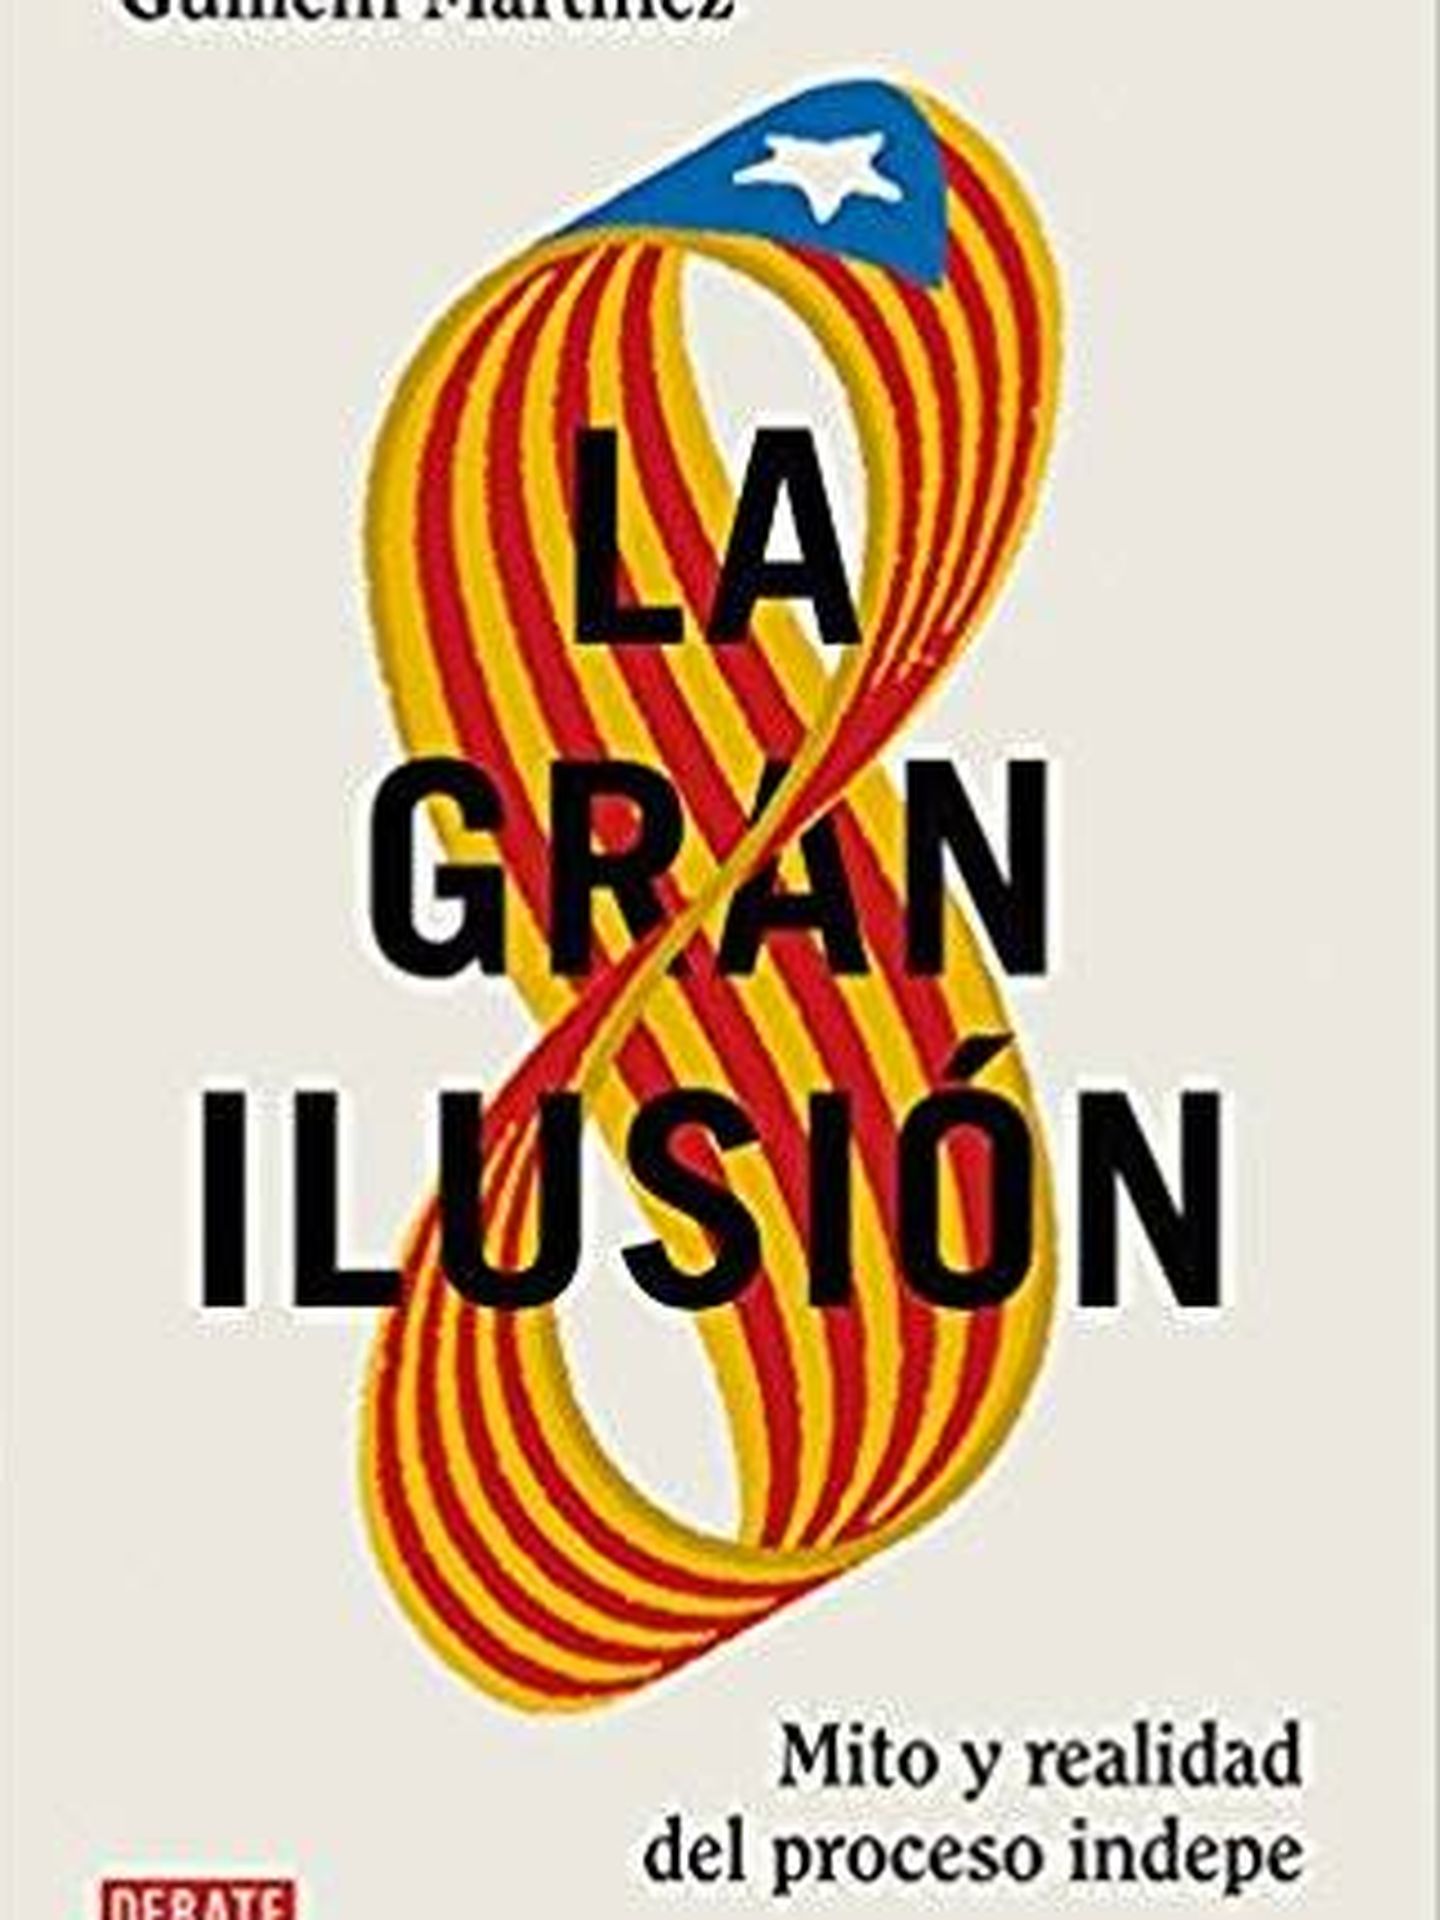 'La gran ilusión'.